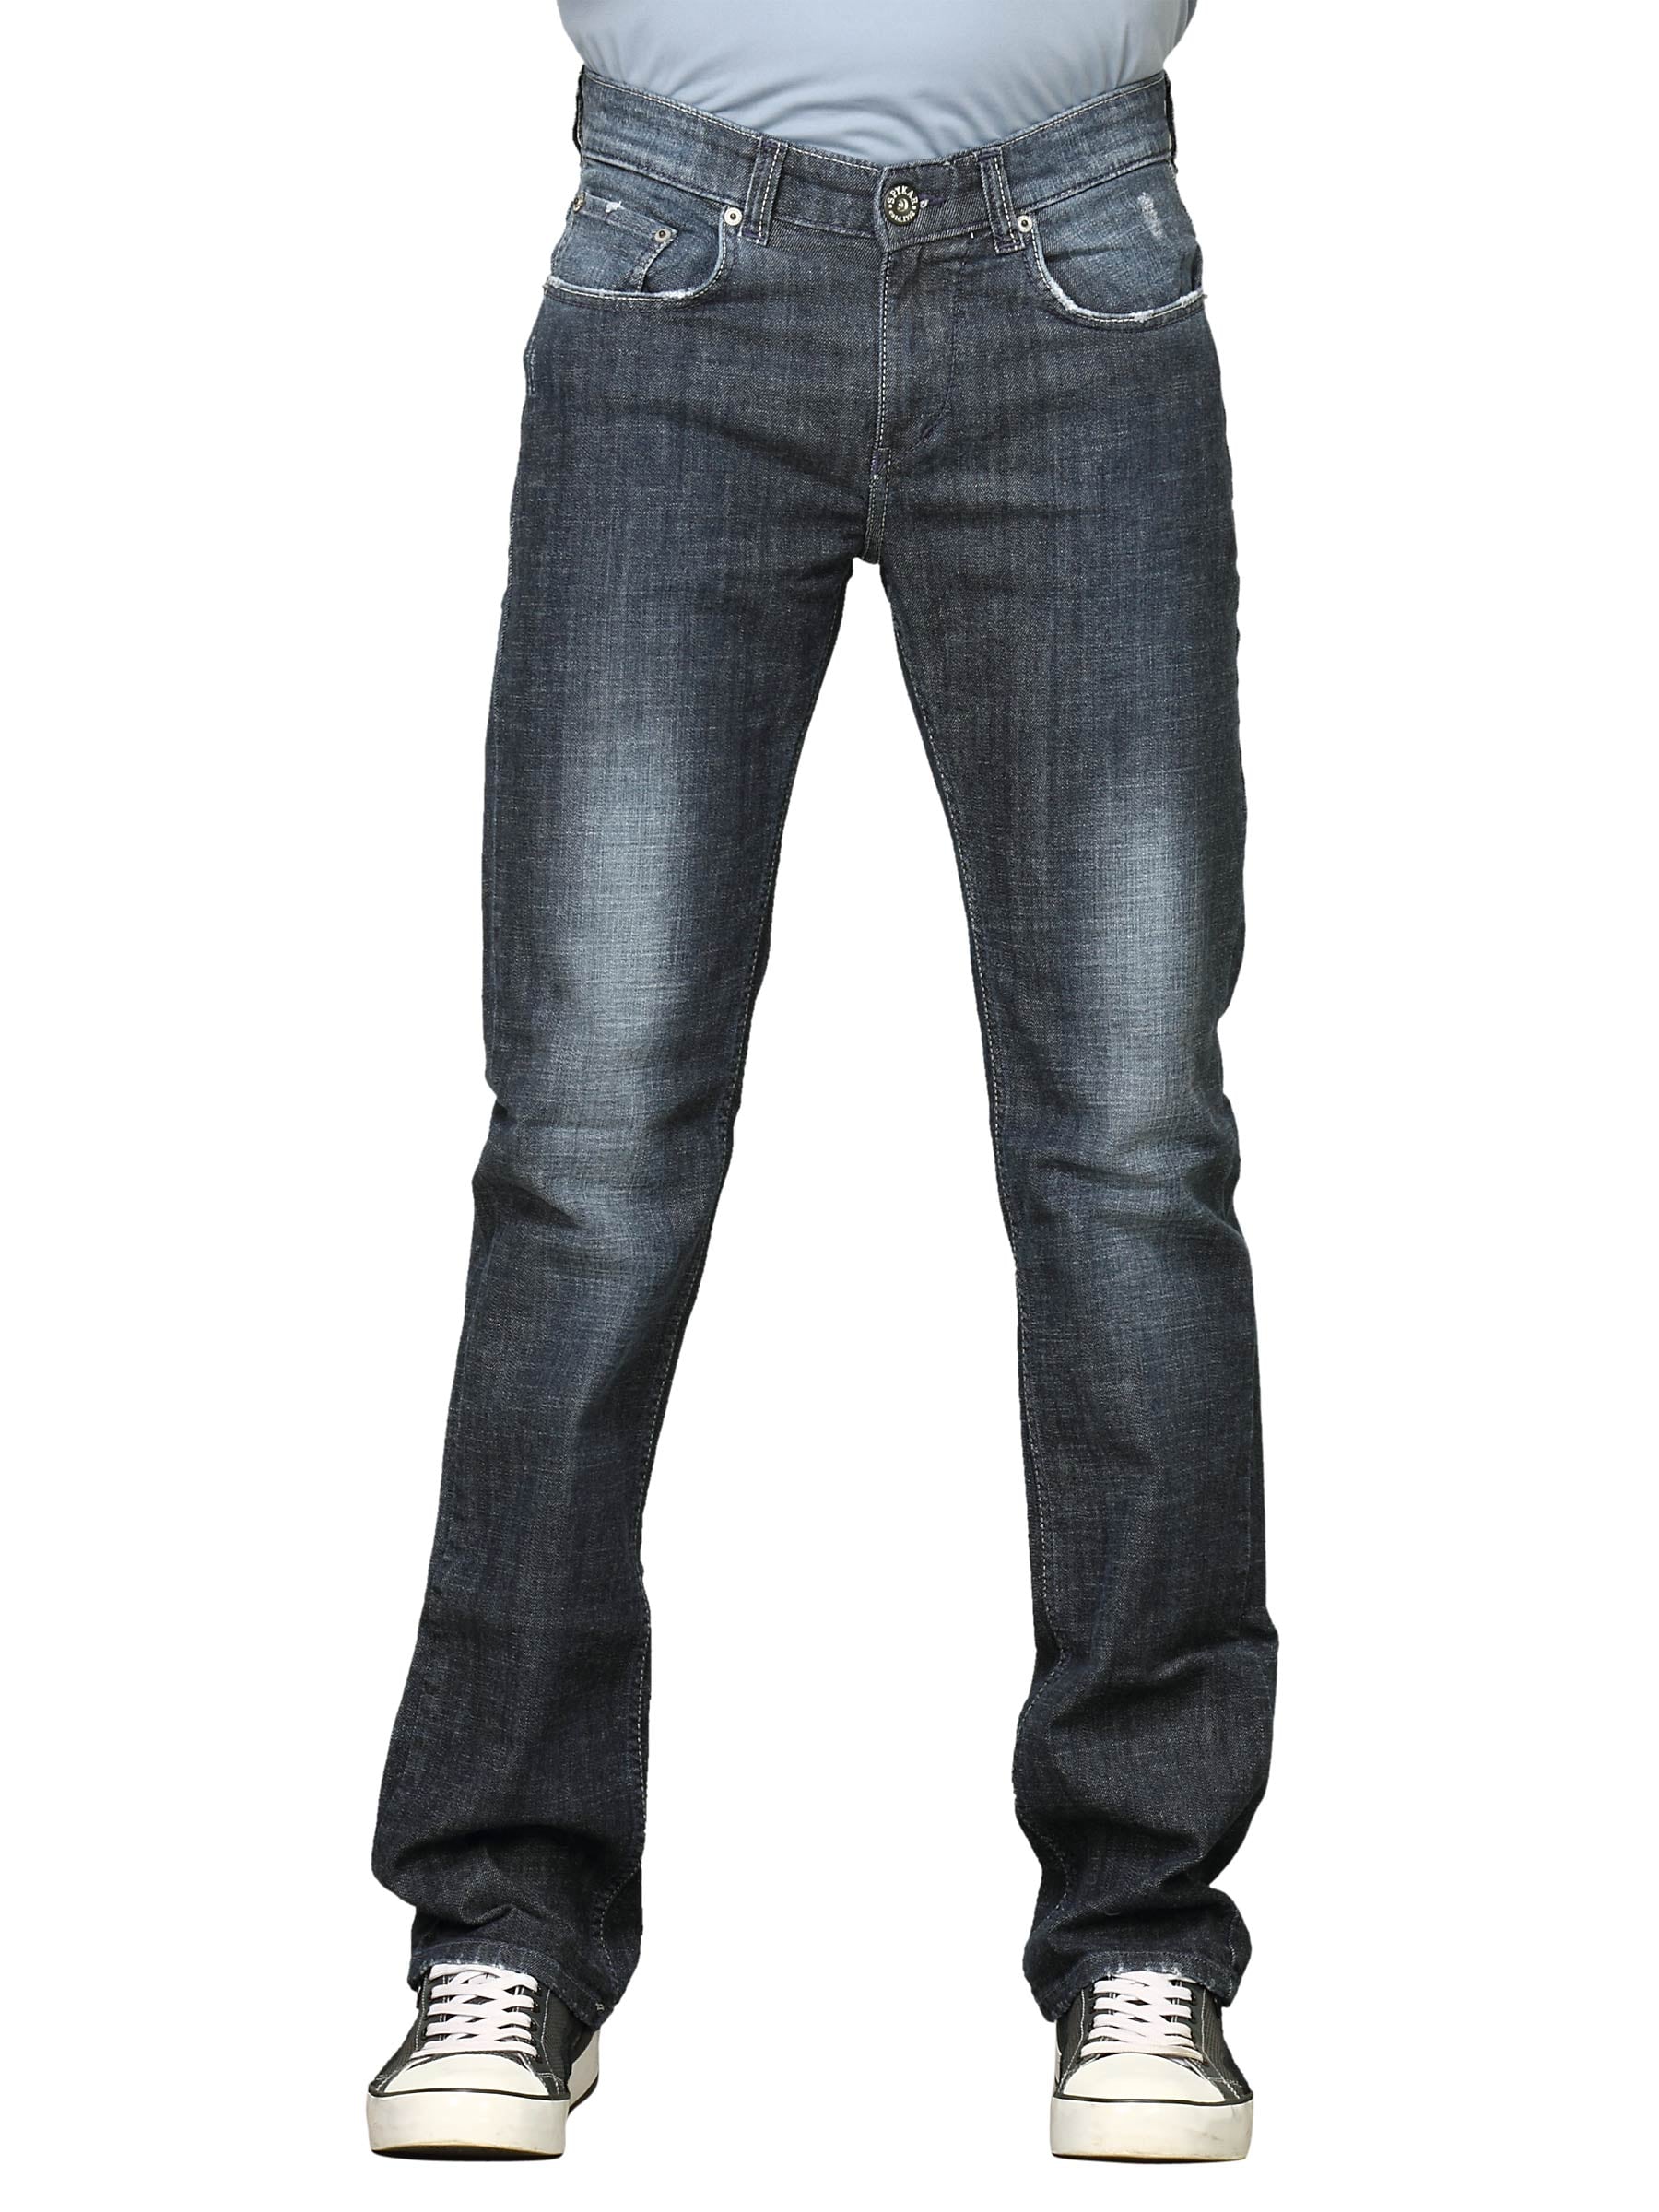 Spykar Men Style Essentials Spykar Basic Attire Series 0428 Blue Jeans